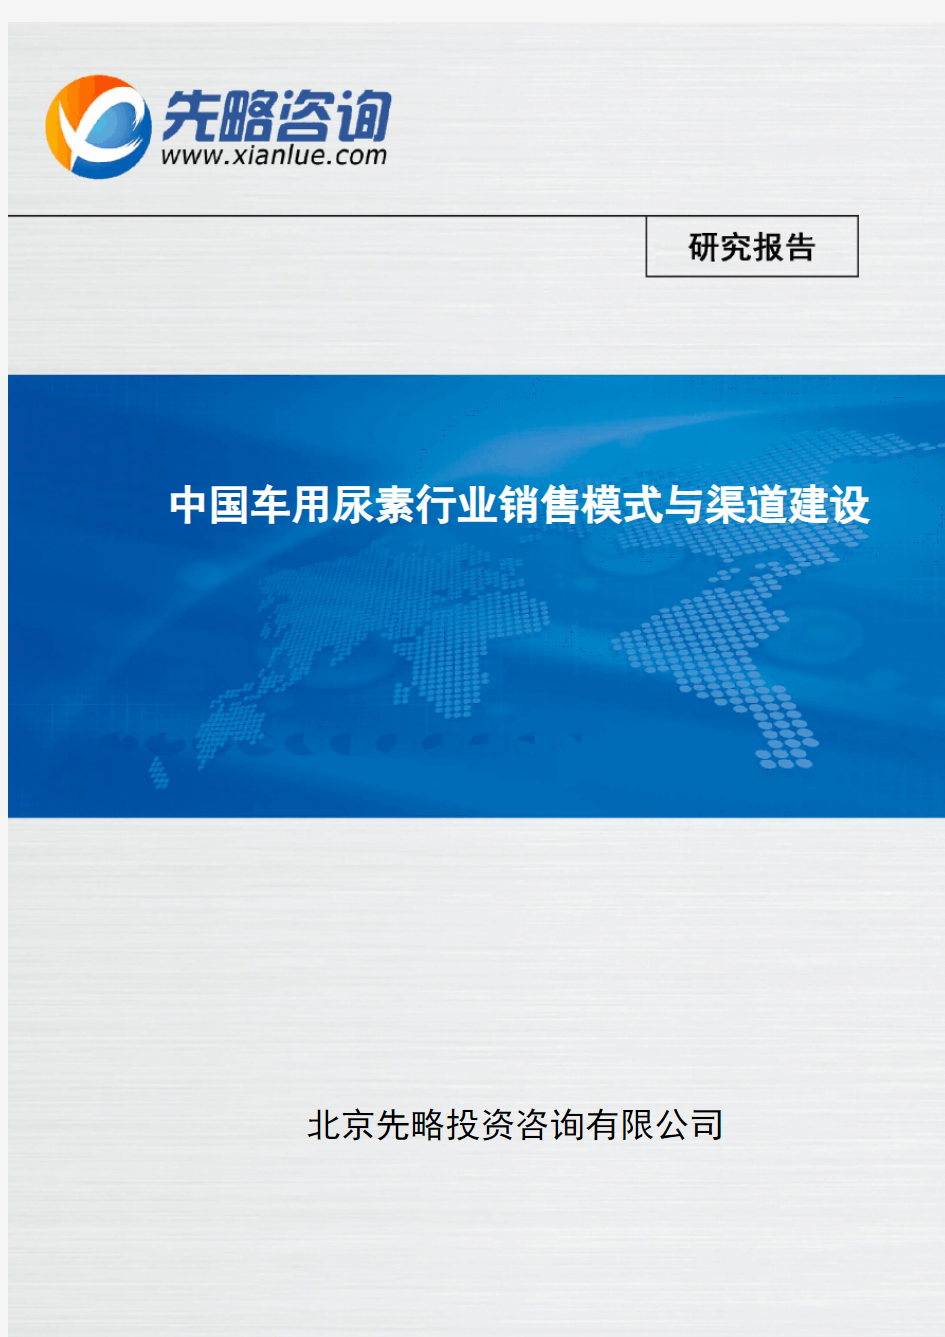 中国车用尿素行业销售模式与渠道建设(报告精选)